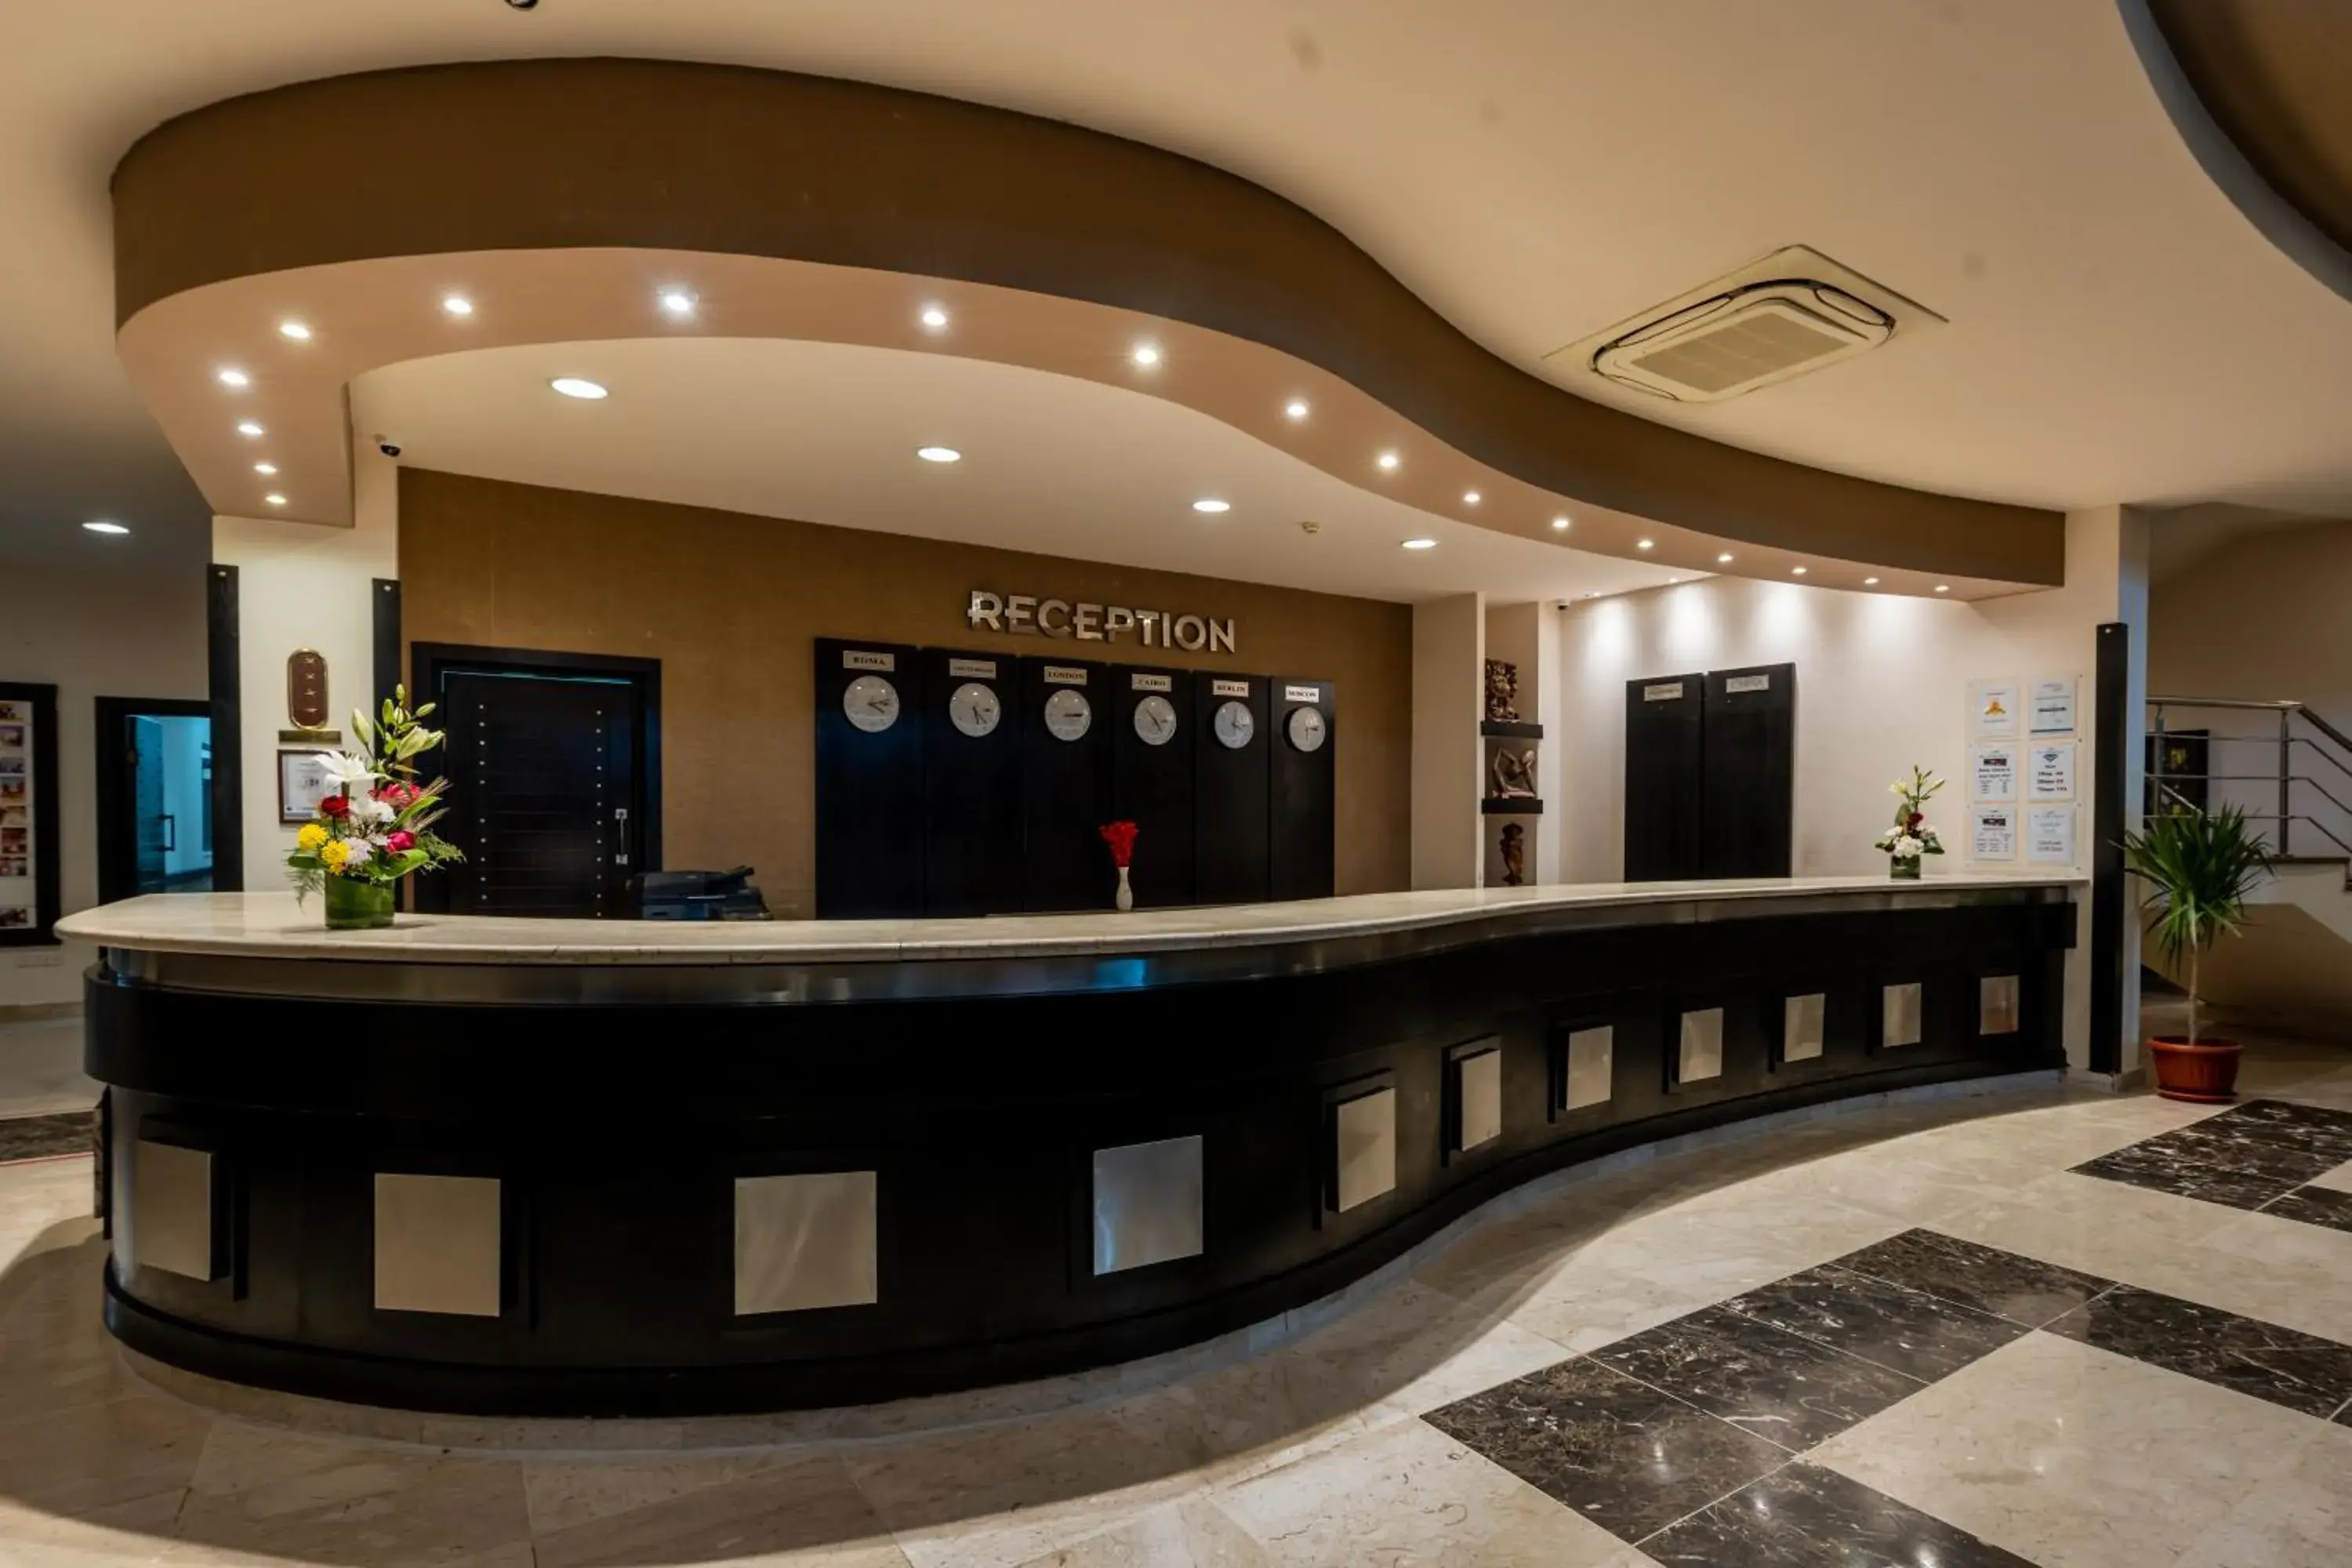 Lobby or reception, Lobby/Reception in El Karma Beach Resort & Aqua Park - Hurghada